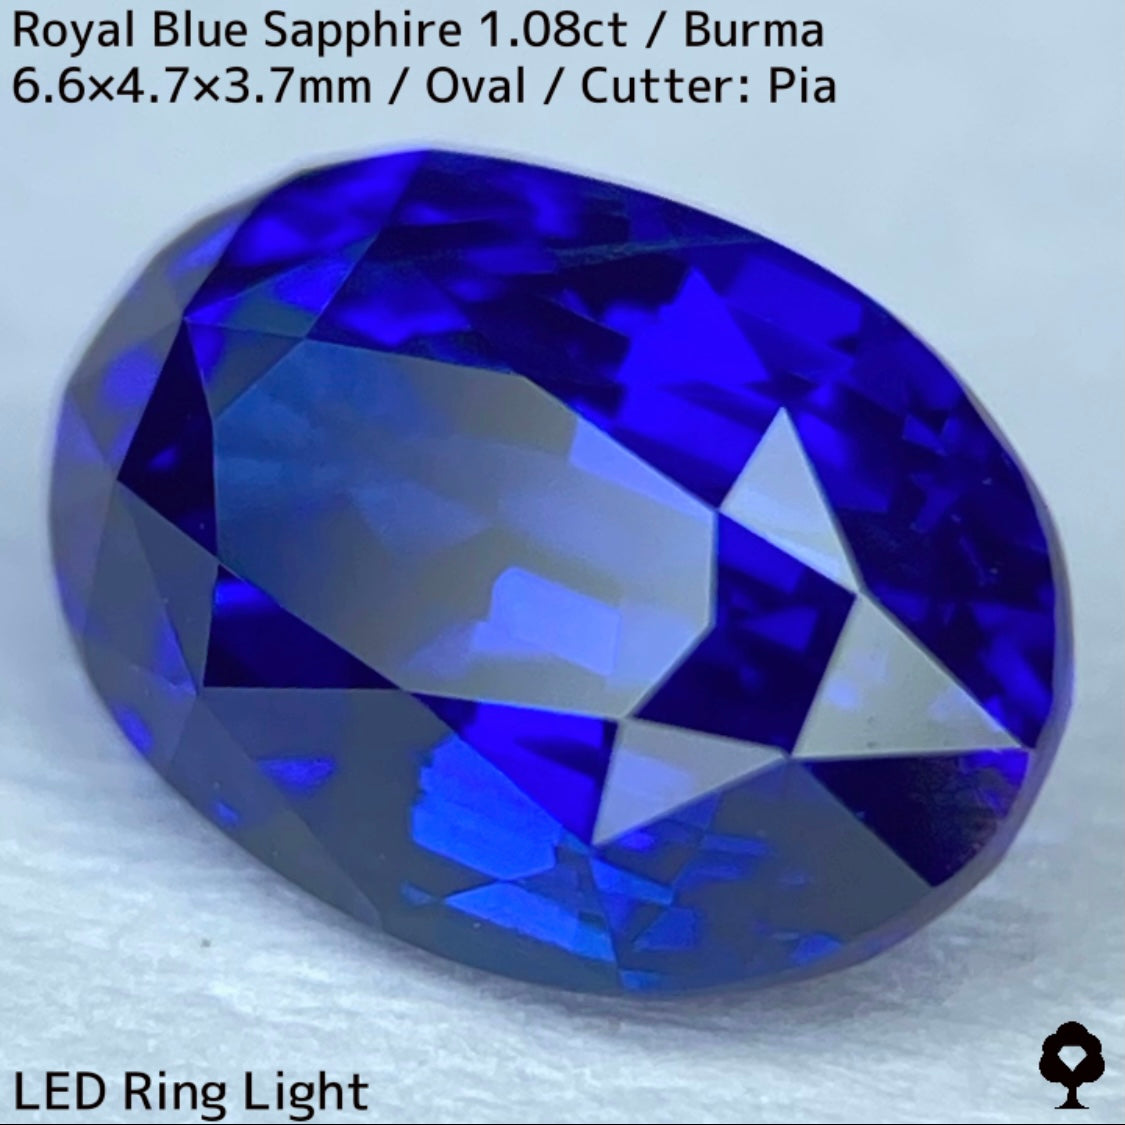 ビルマ産ロイヤルブルーサファイア1.08ct★濃厚だけど暗くない最高の色合いの1ctアップ美結晶ロイヤル